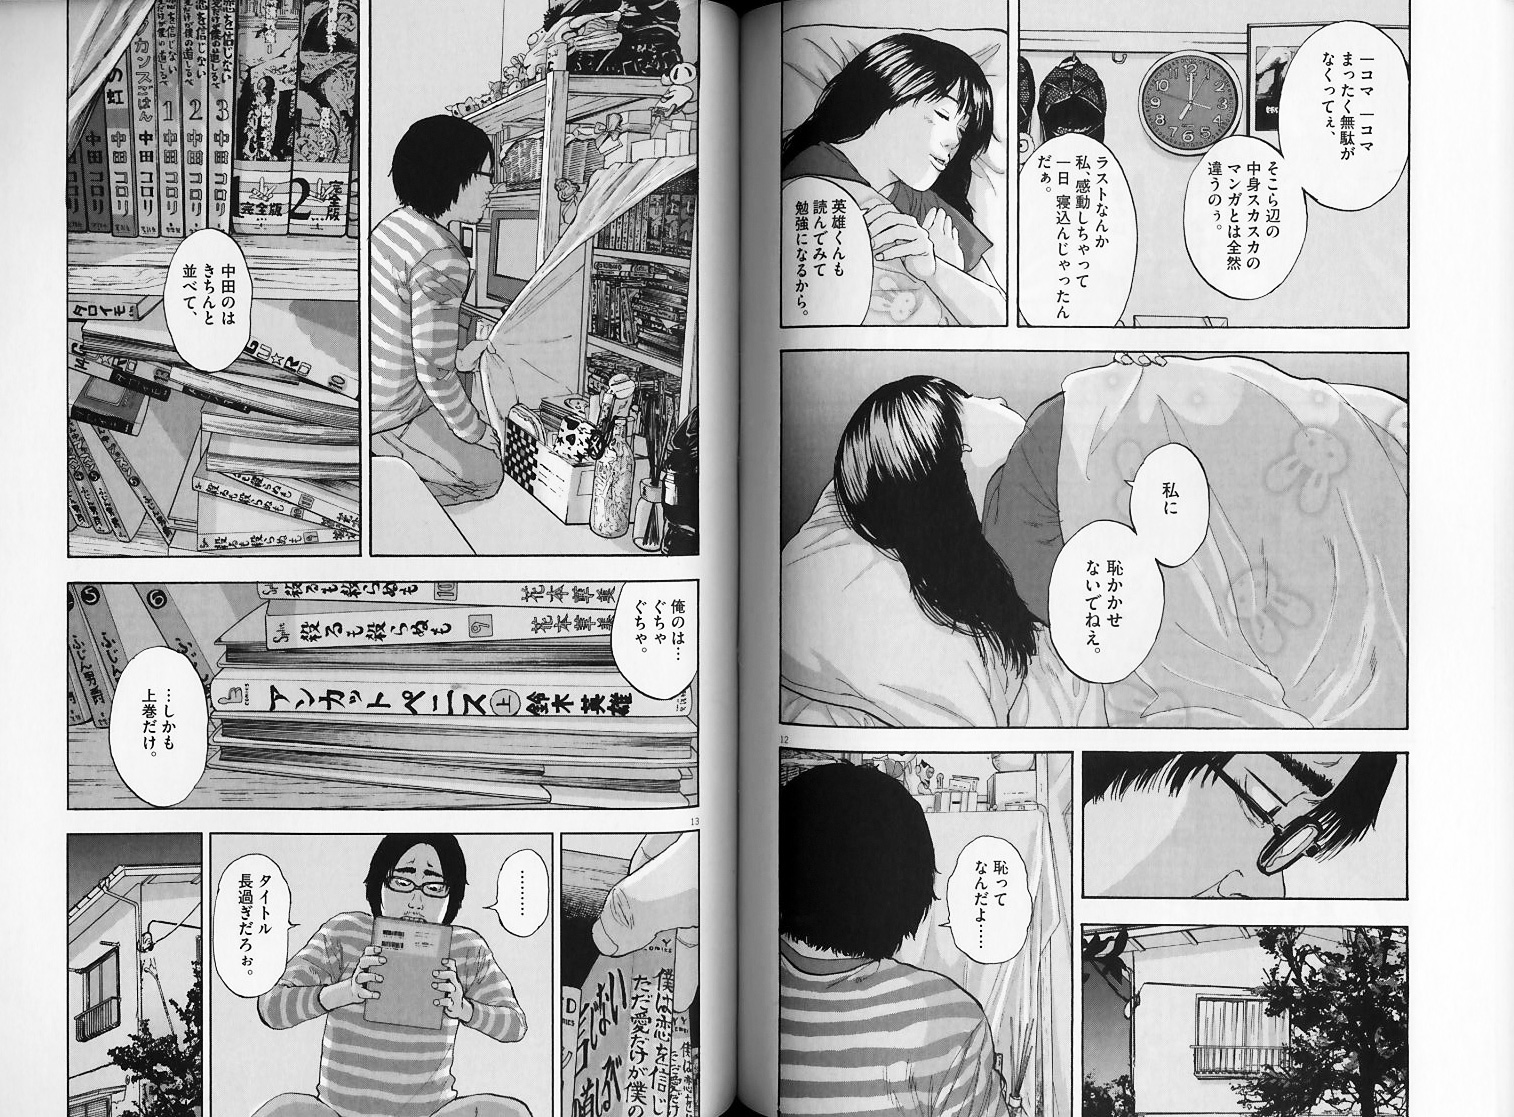 アイアムアヒーロー 花沢健吾 を試し読み マンガのジャンルで試し読み